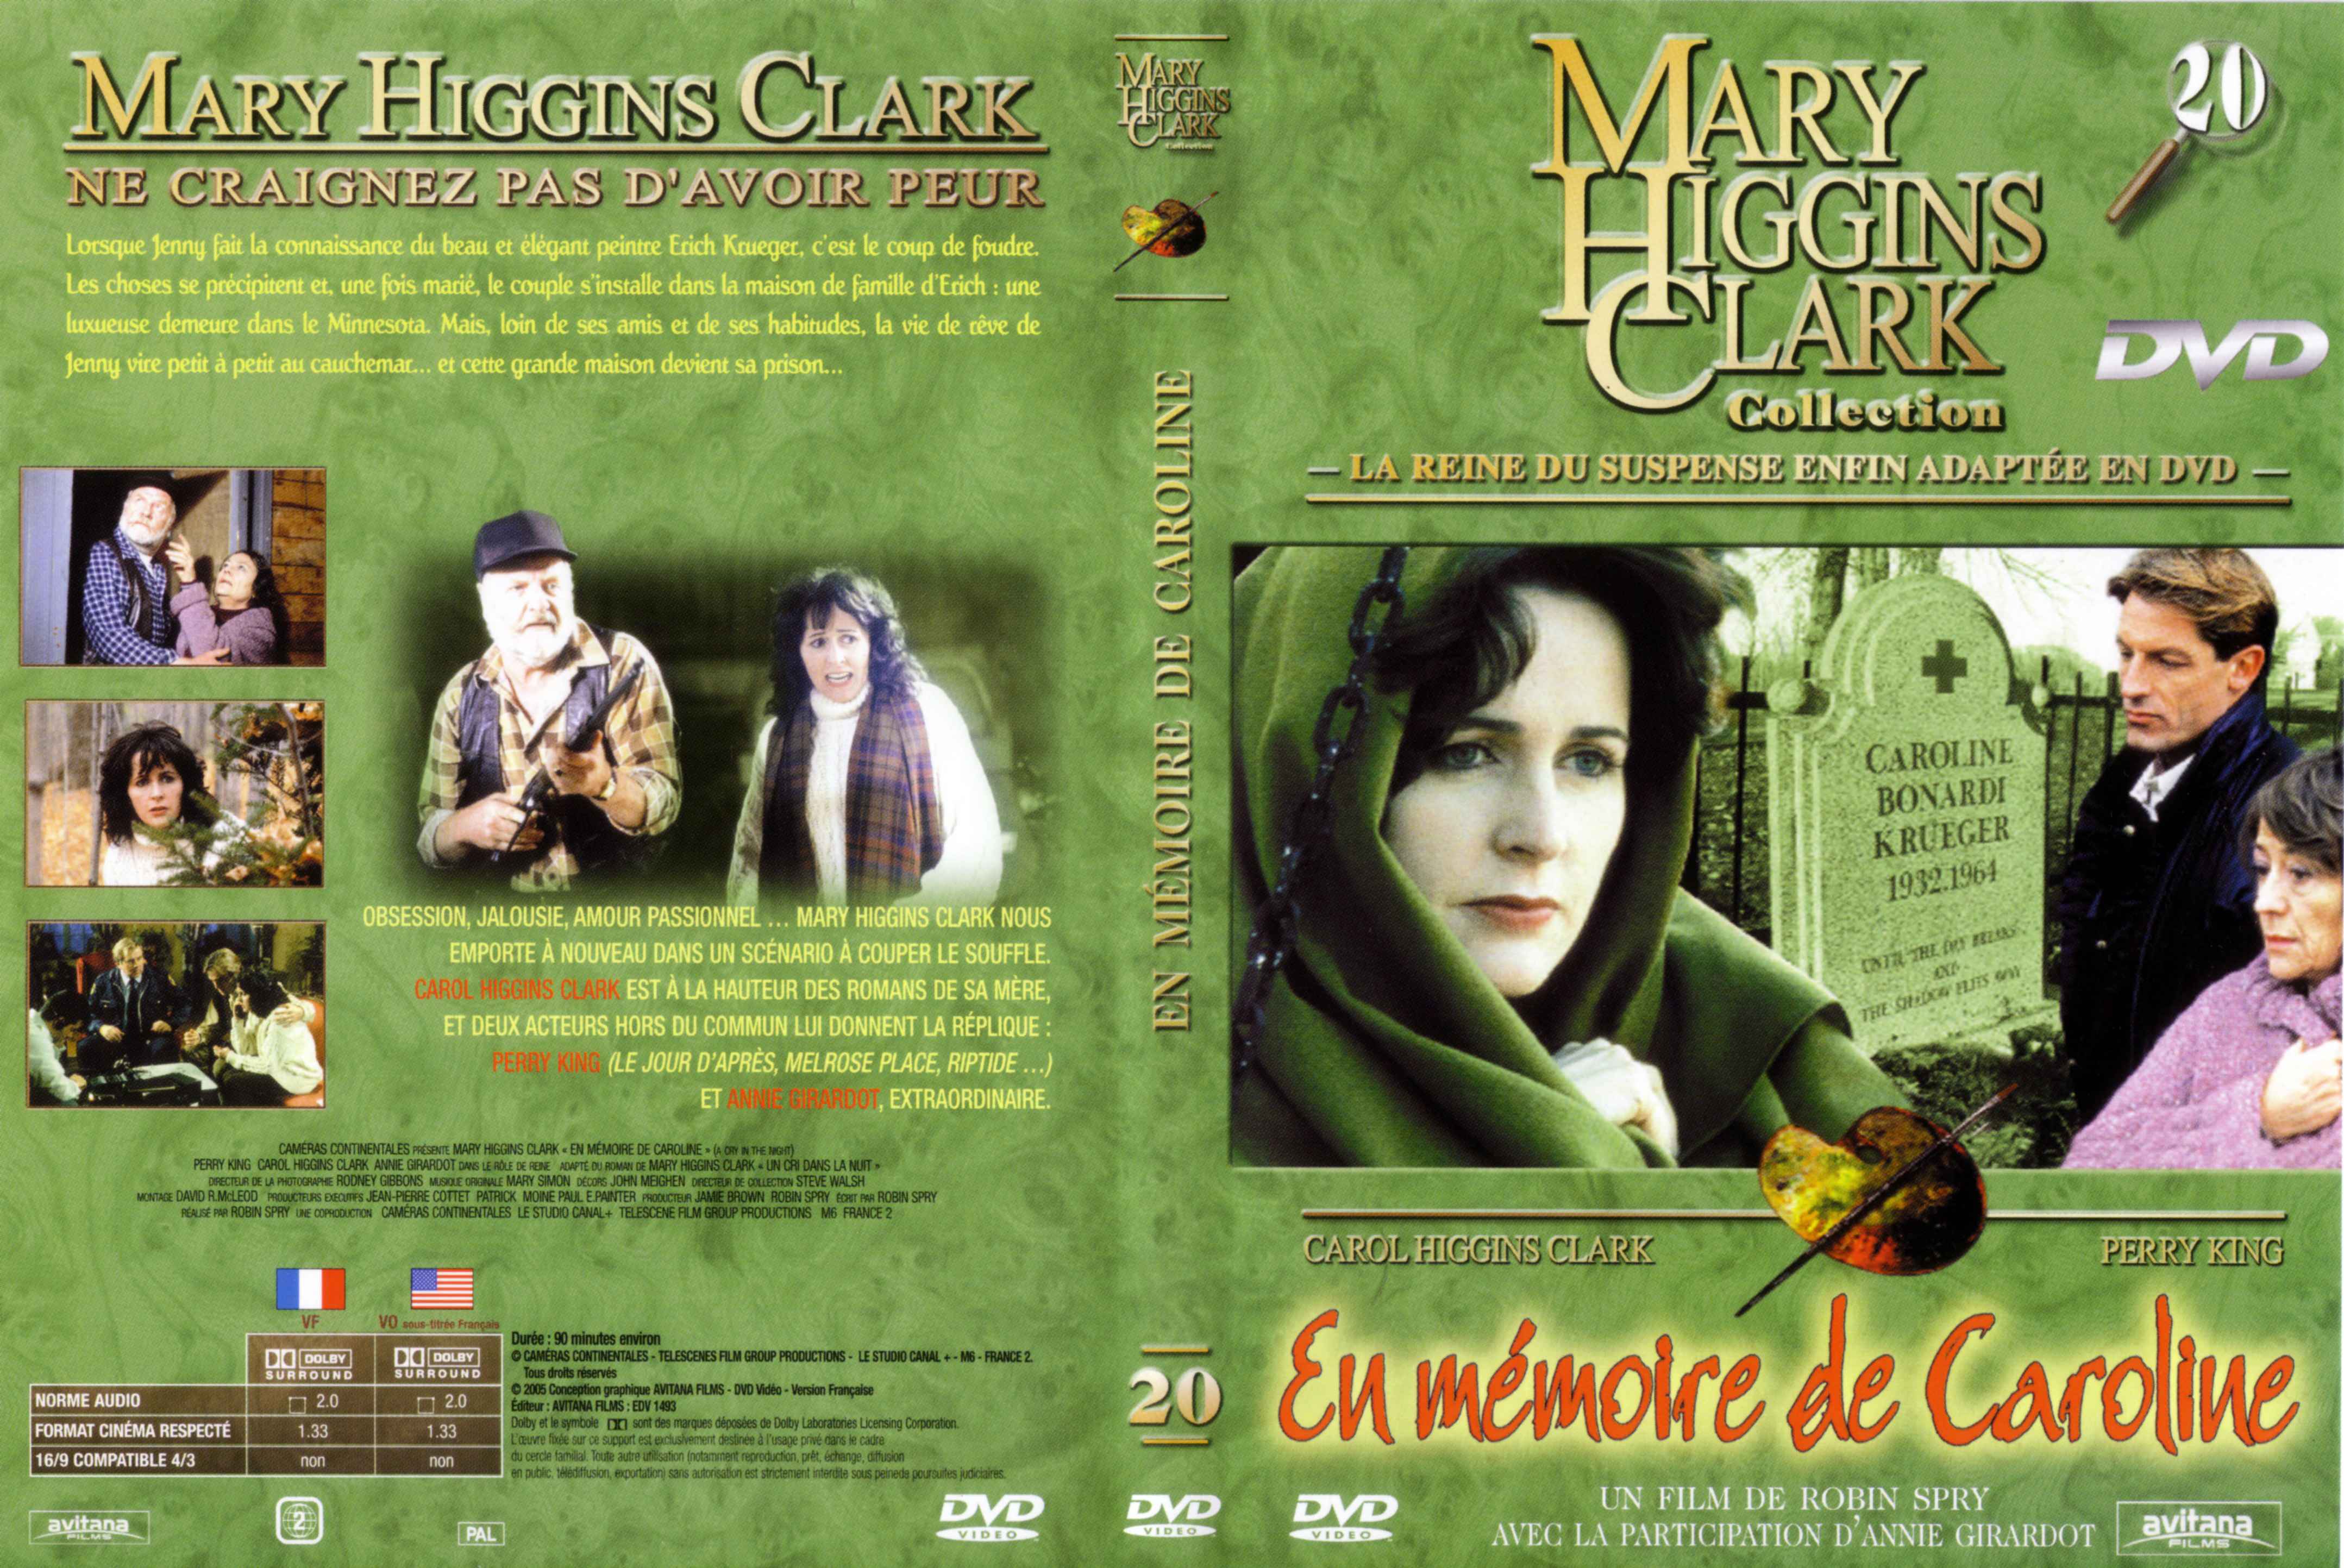 Jaquette DVD de Mary Higgins Clark vol 20 - En mémoire de Caroline - Cinéma Passion